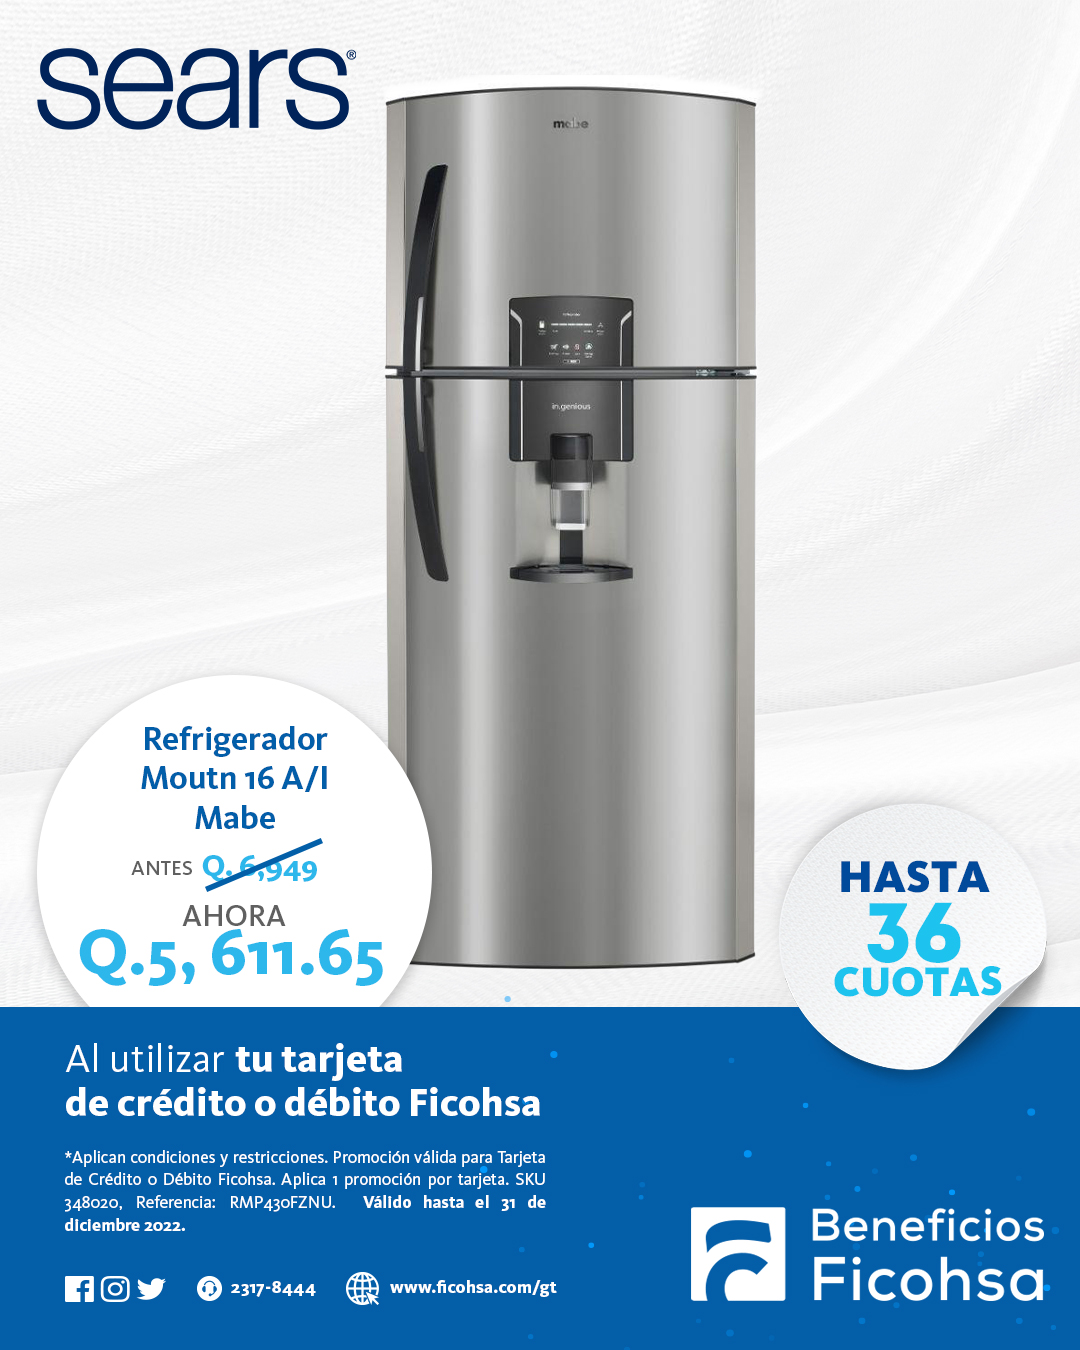 Refrigerador MABE a ¡PRECIO ESPECIAL! en Sears con tu Tarjeta Ficohsa